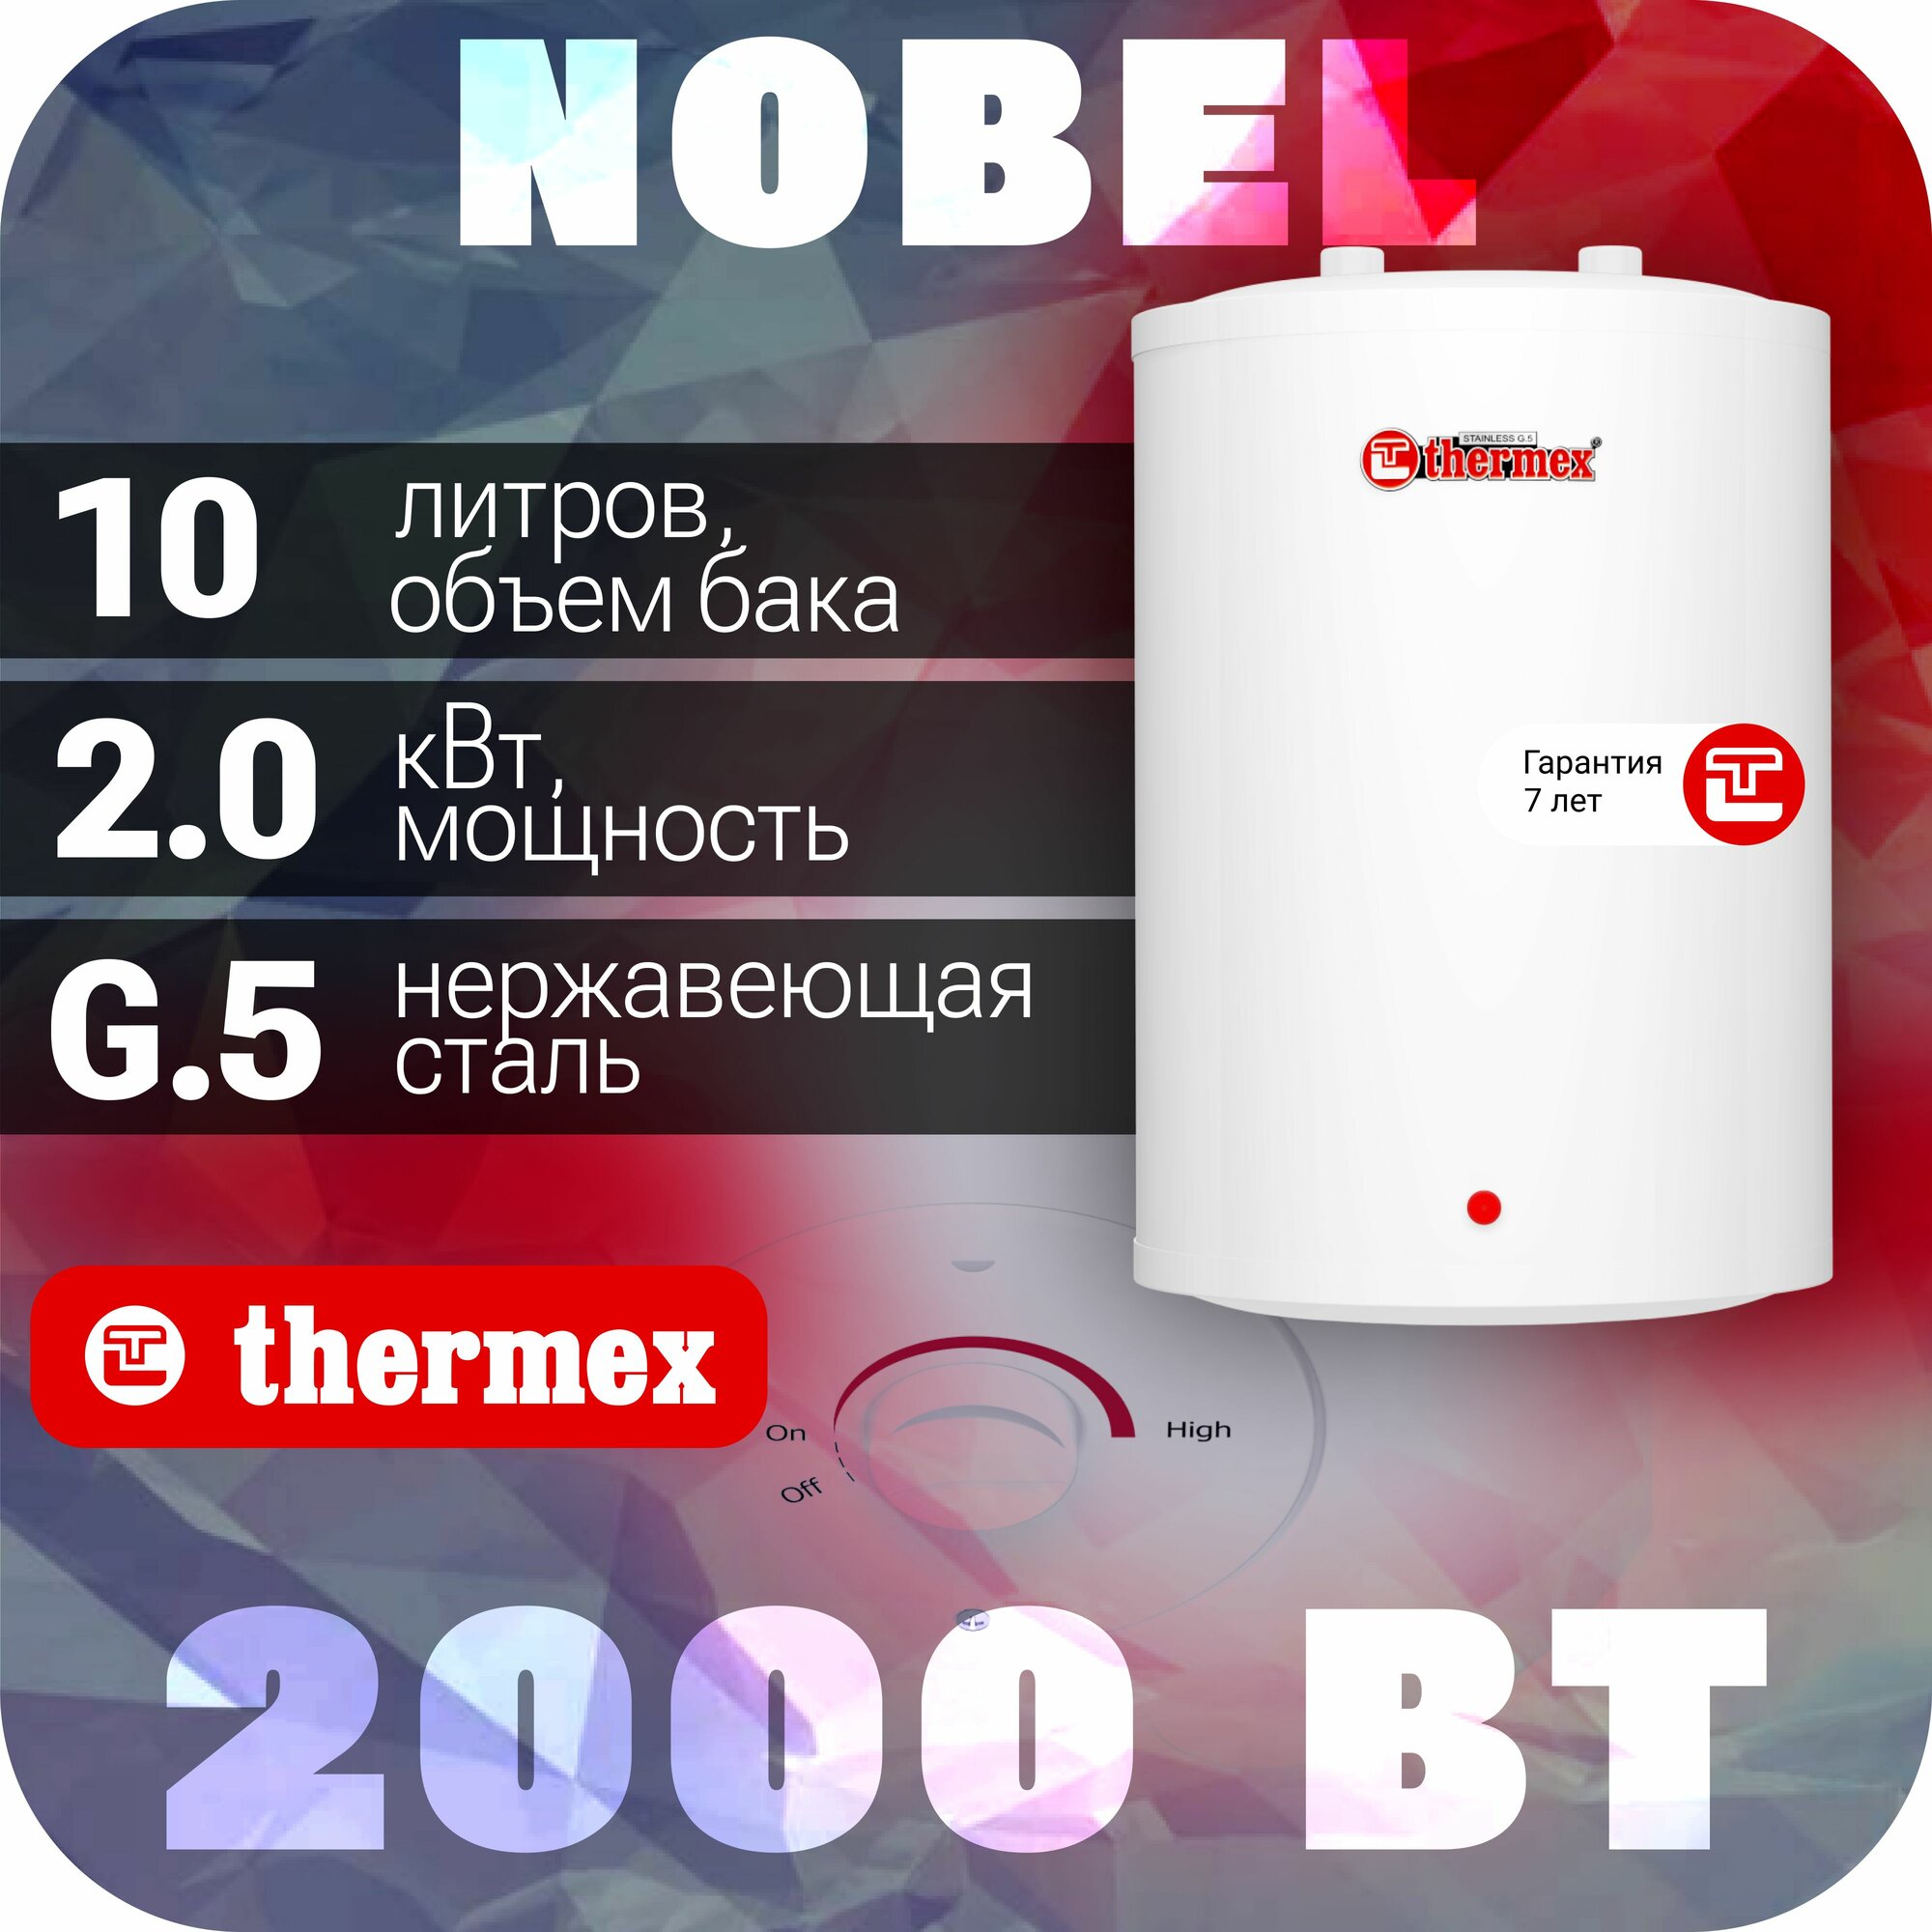 Аккумуляционный электрический бытовой водонагреватель Термекс Thermex - фото №2